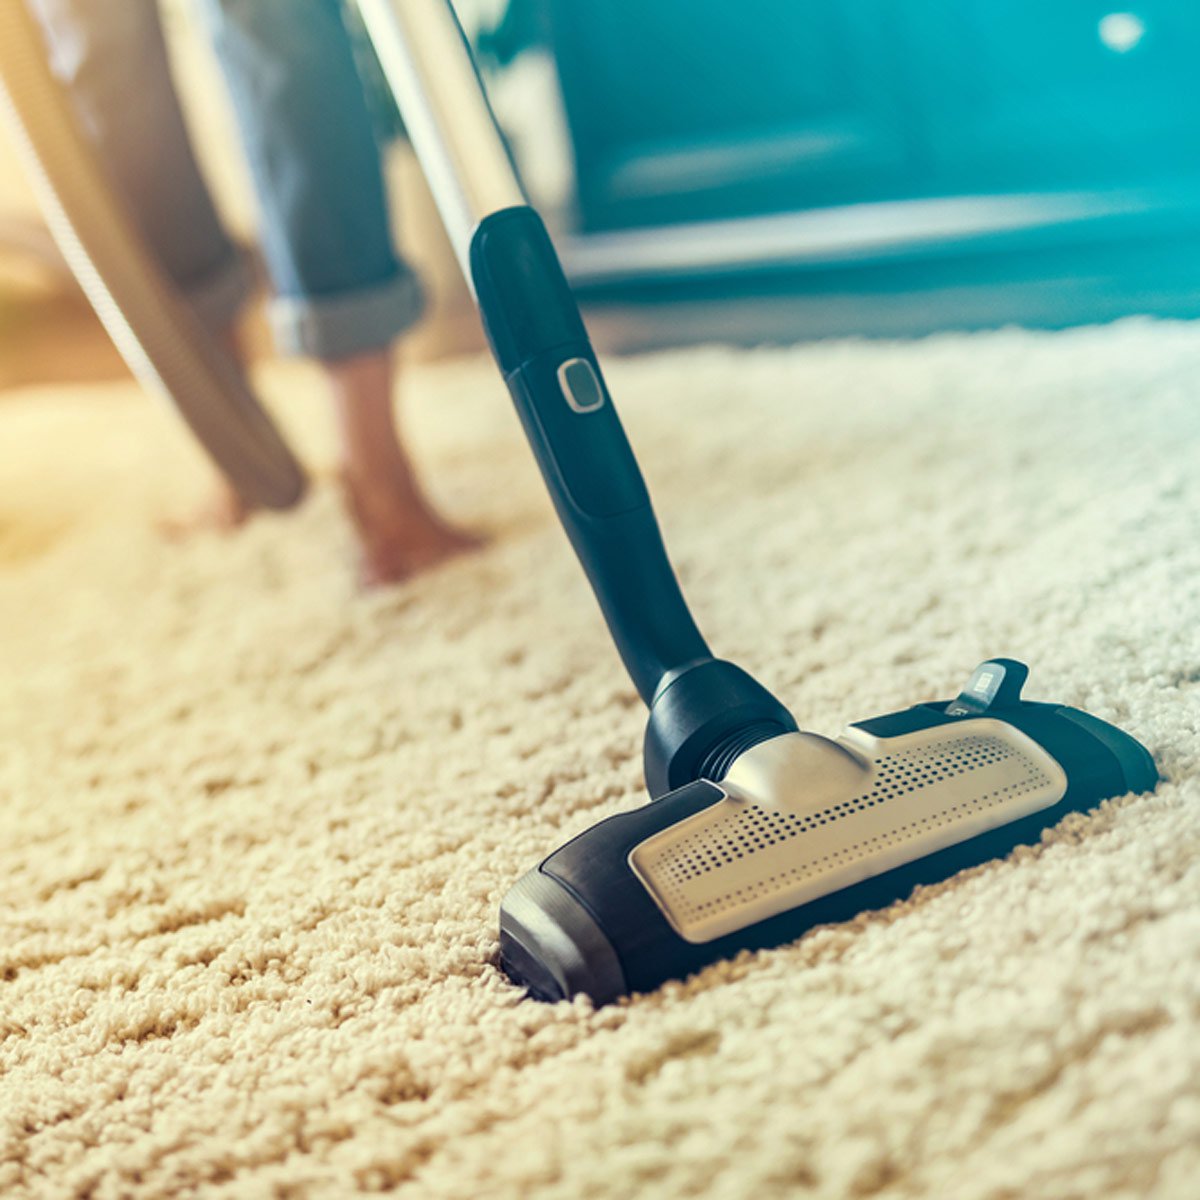 Vacuum Your Carpet